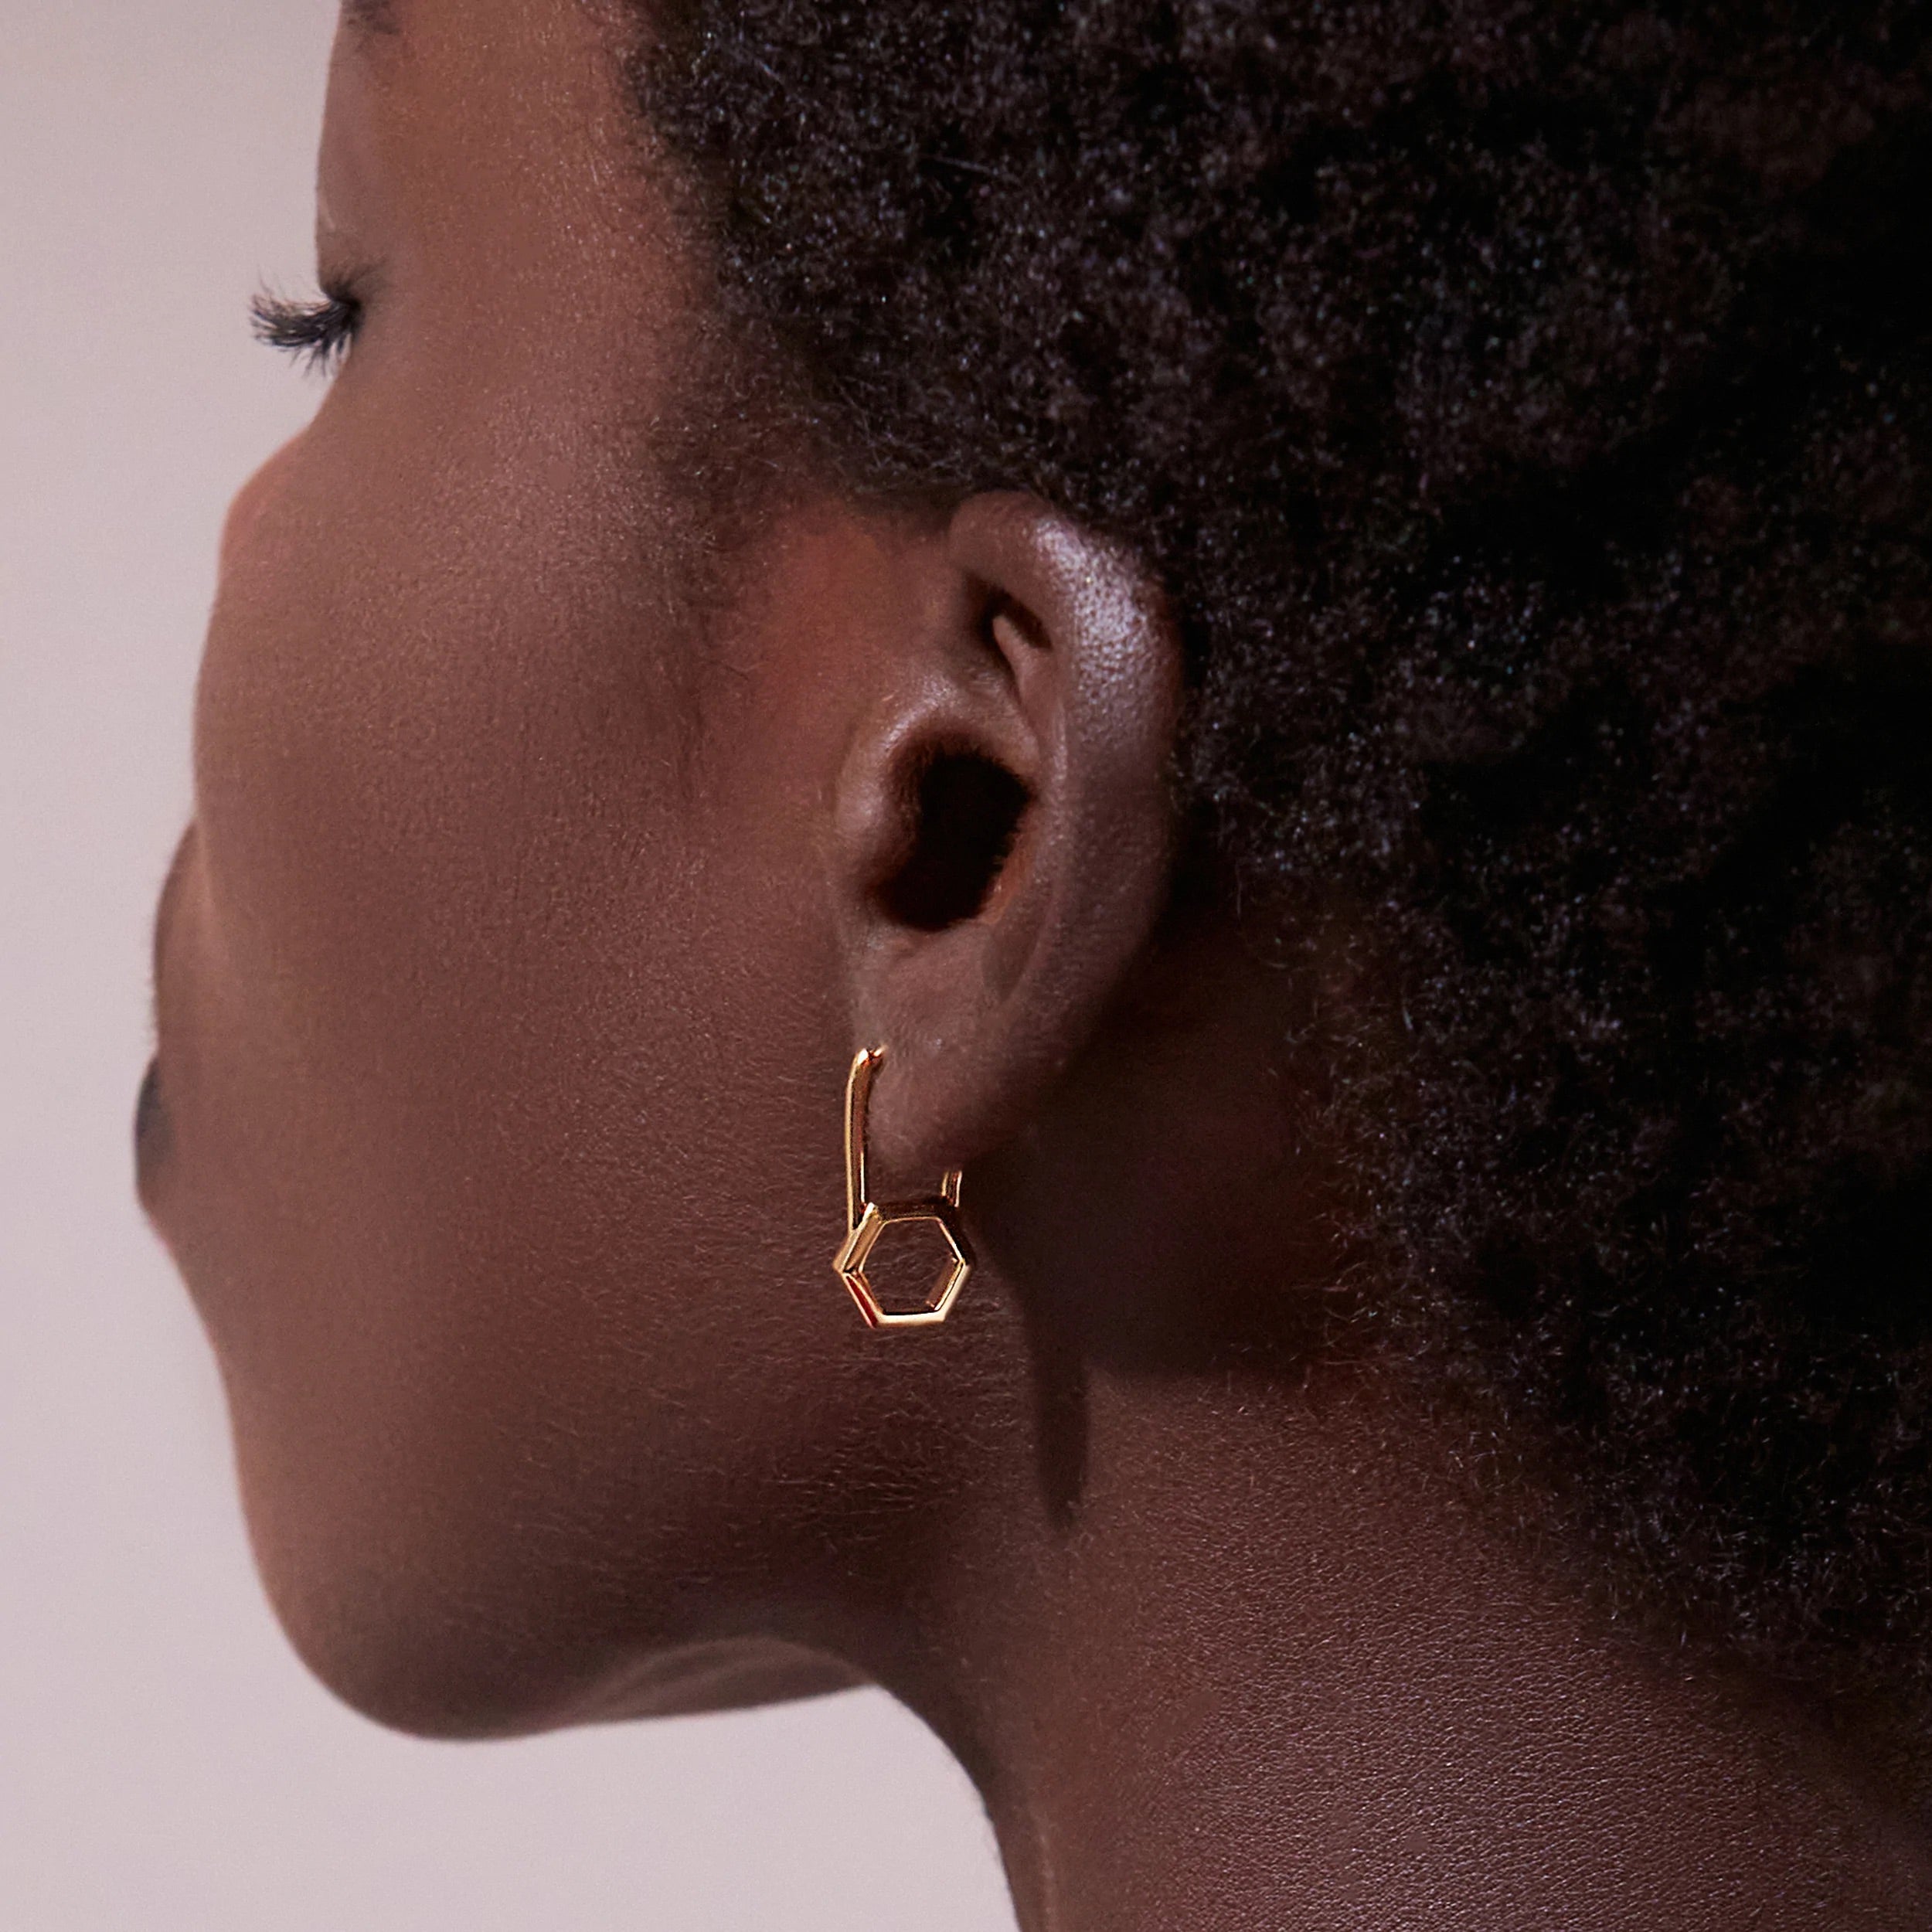 A woman's ear with a Rachel Jackson London Hex Padlock Hoop earring, showcasing elegant jewellery.